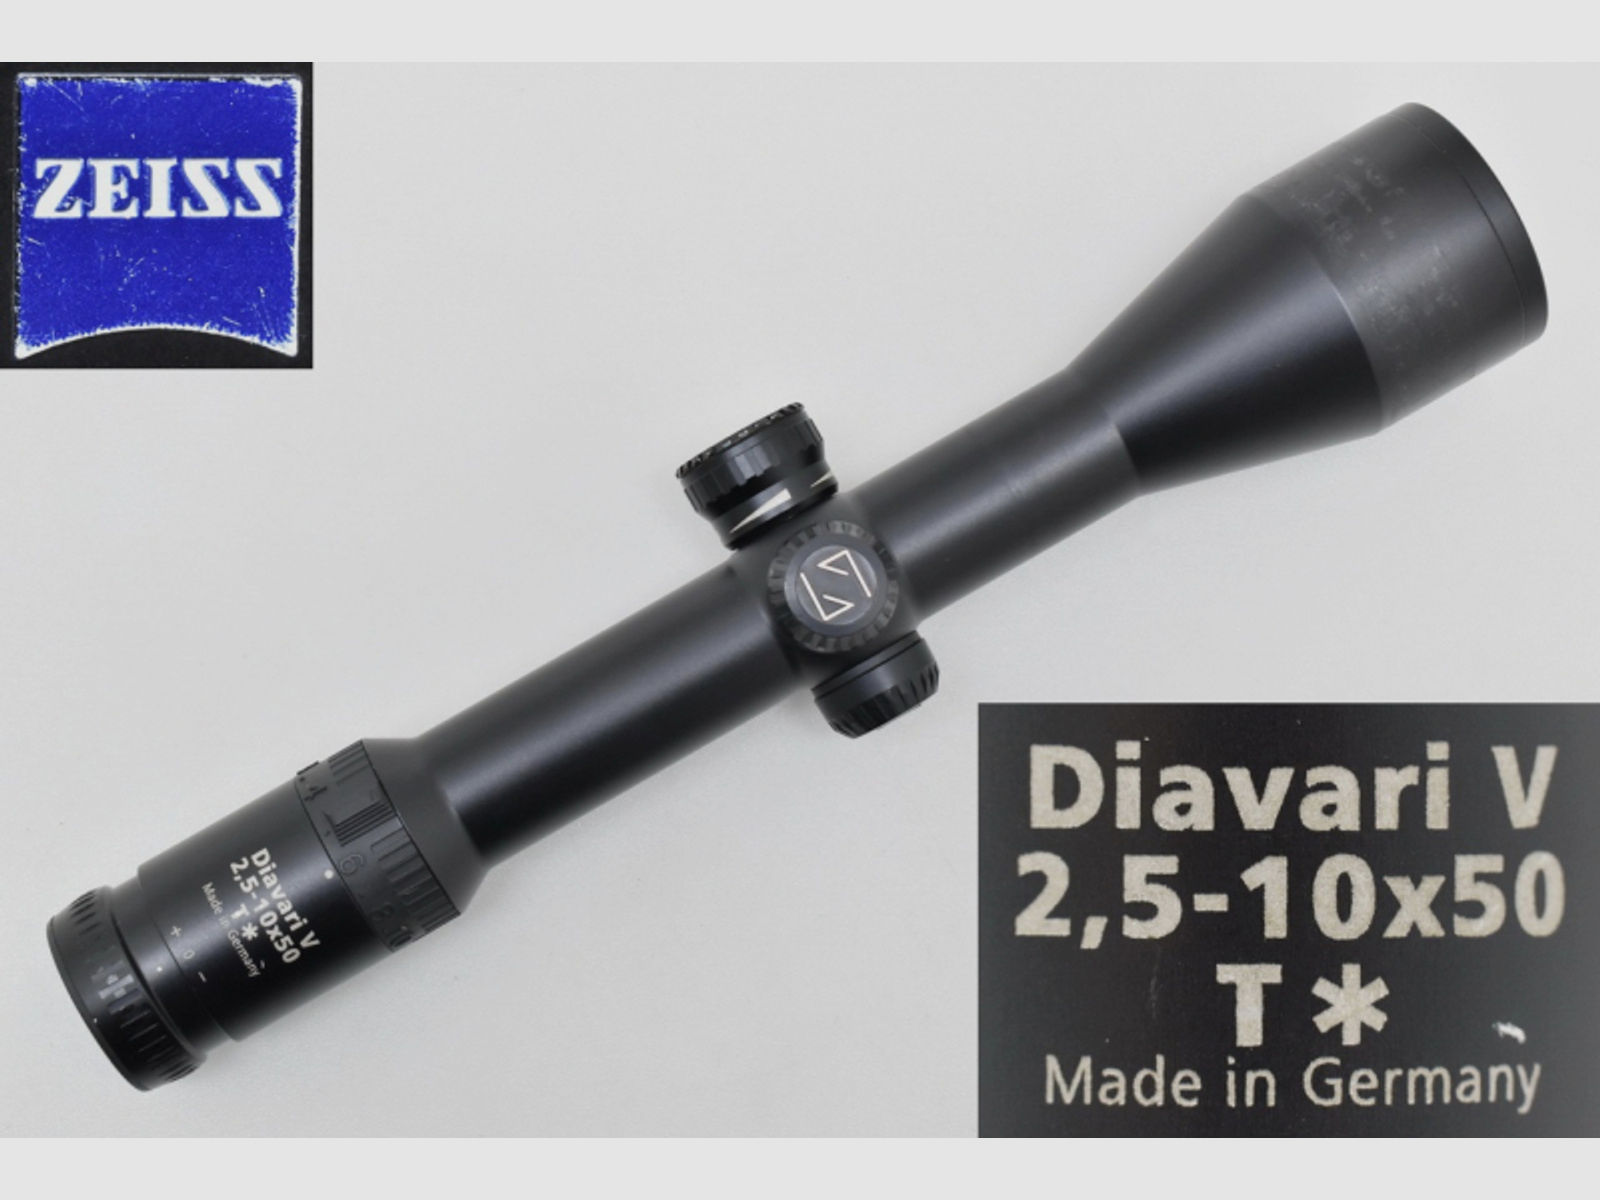 ZEISS Diavari V 2,5-10x50 T* Zielfernrohr mit Leuchtabsehen 44